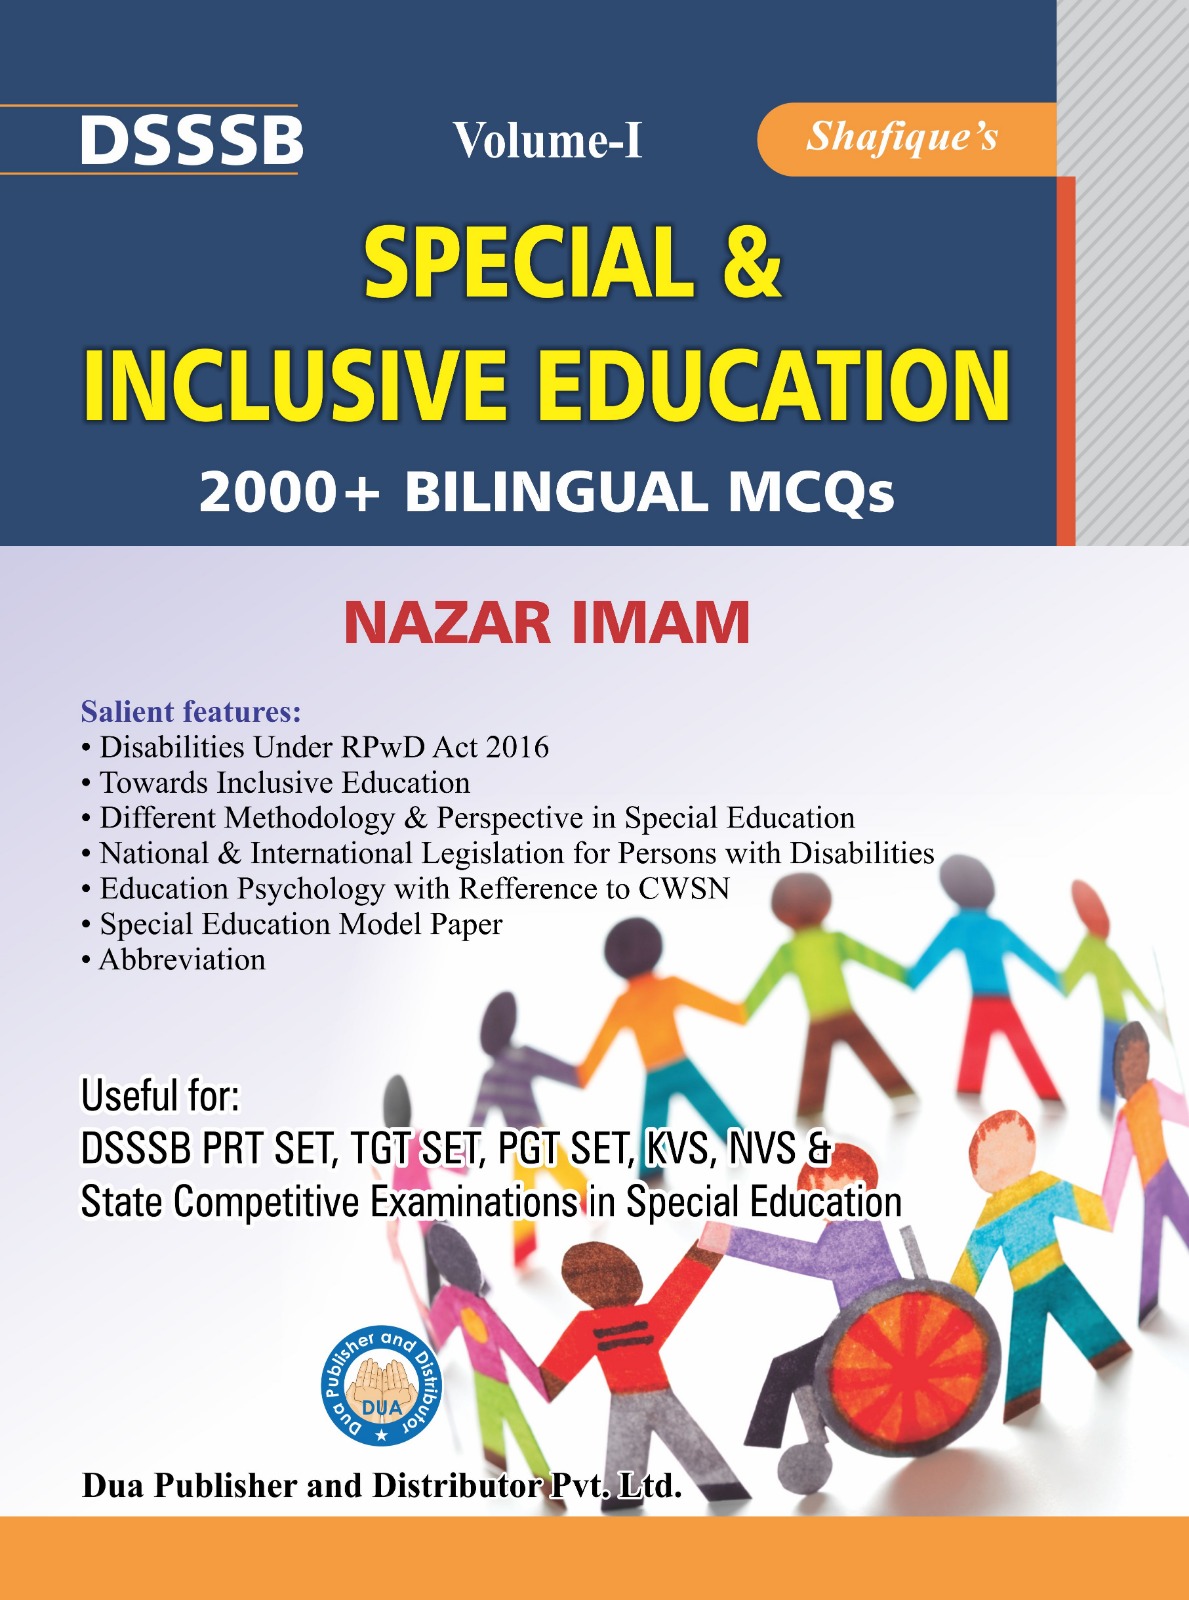 DSSSB Special Inclusive Education volume-I